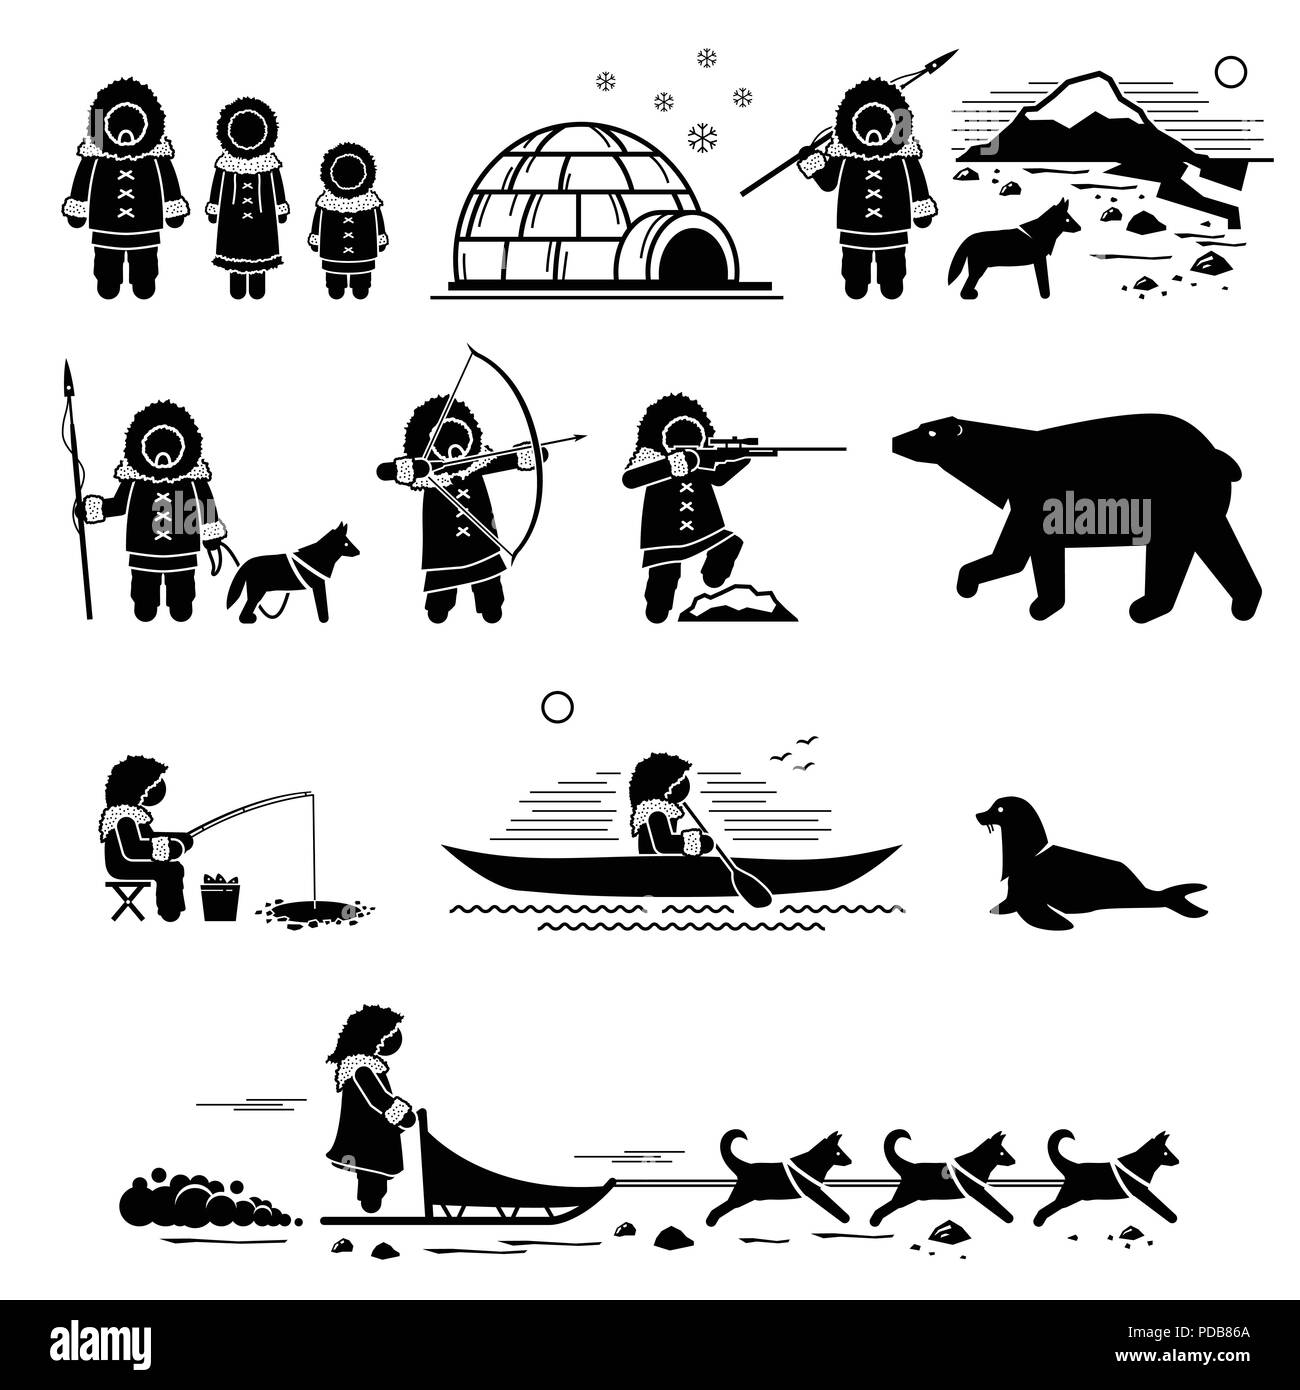 Eskimo People, Lifestyle, und Tiere. Strichmännchen Piktogramm zeigt Eskimo menschliche, Iglu, Jagd, Angeln, Eisbär, Husky, Hund, Hunde, die Dichtung. Stock Vektor